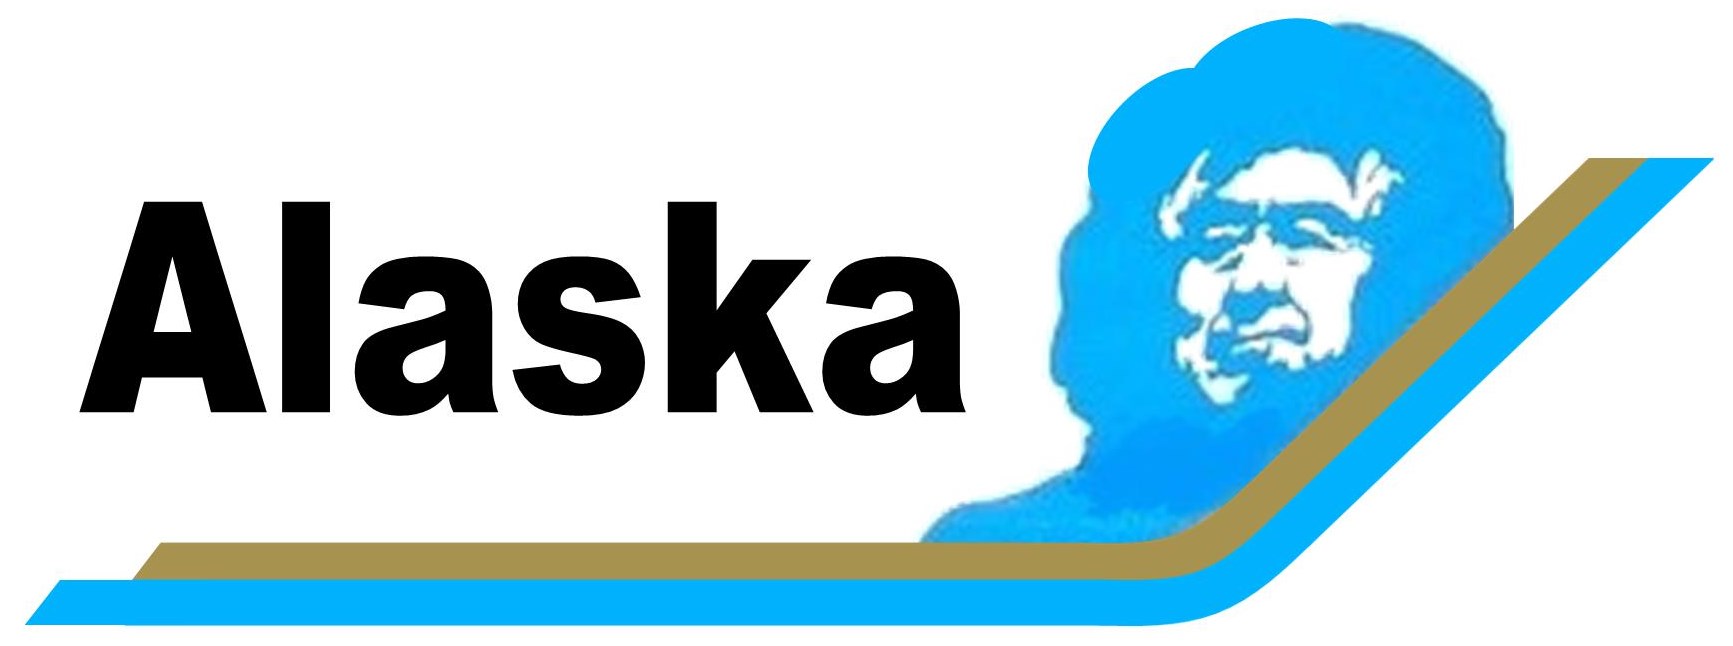 Alaska Airlines
Keywords: Alaska Airlines - Eskimo